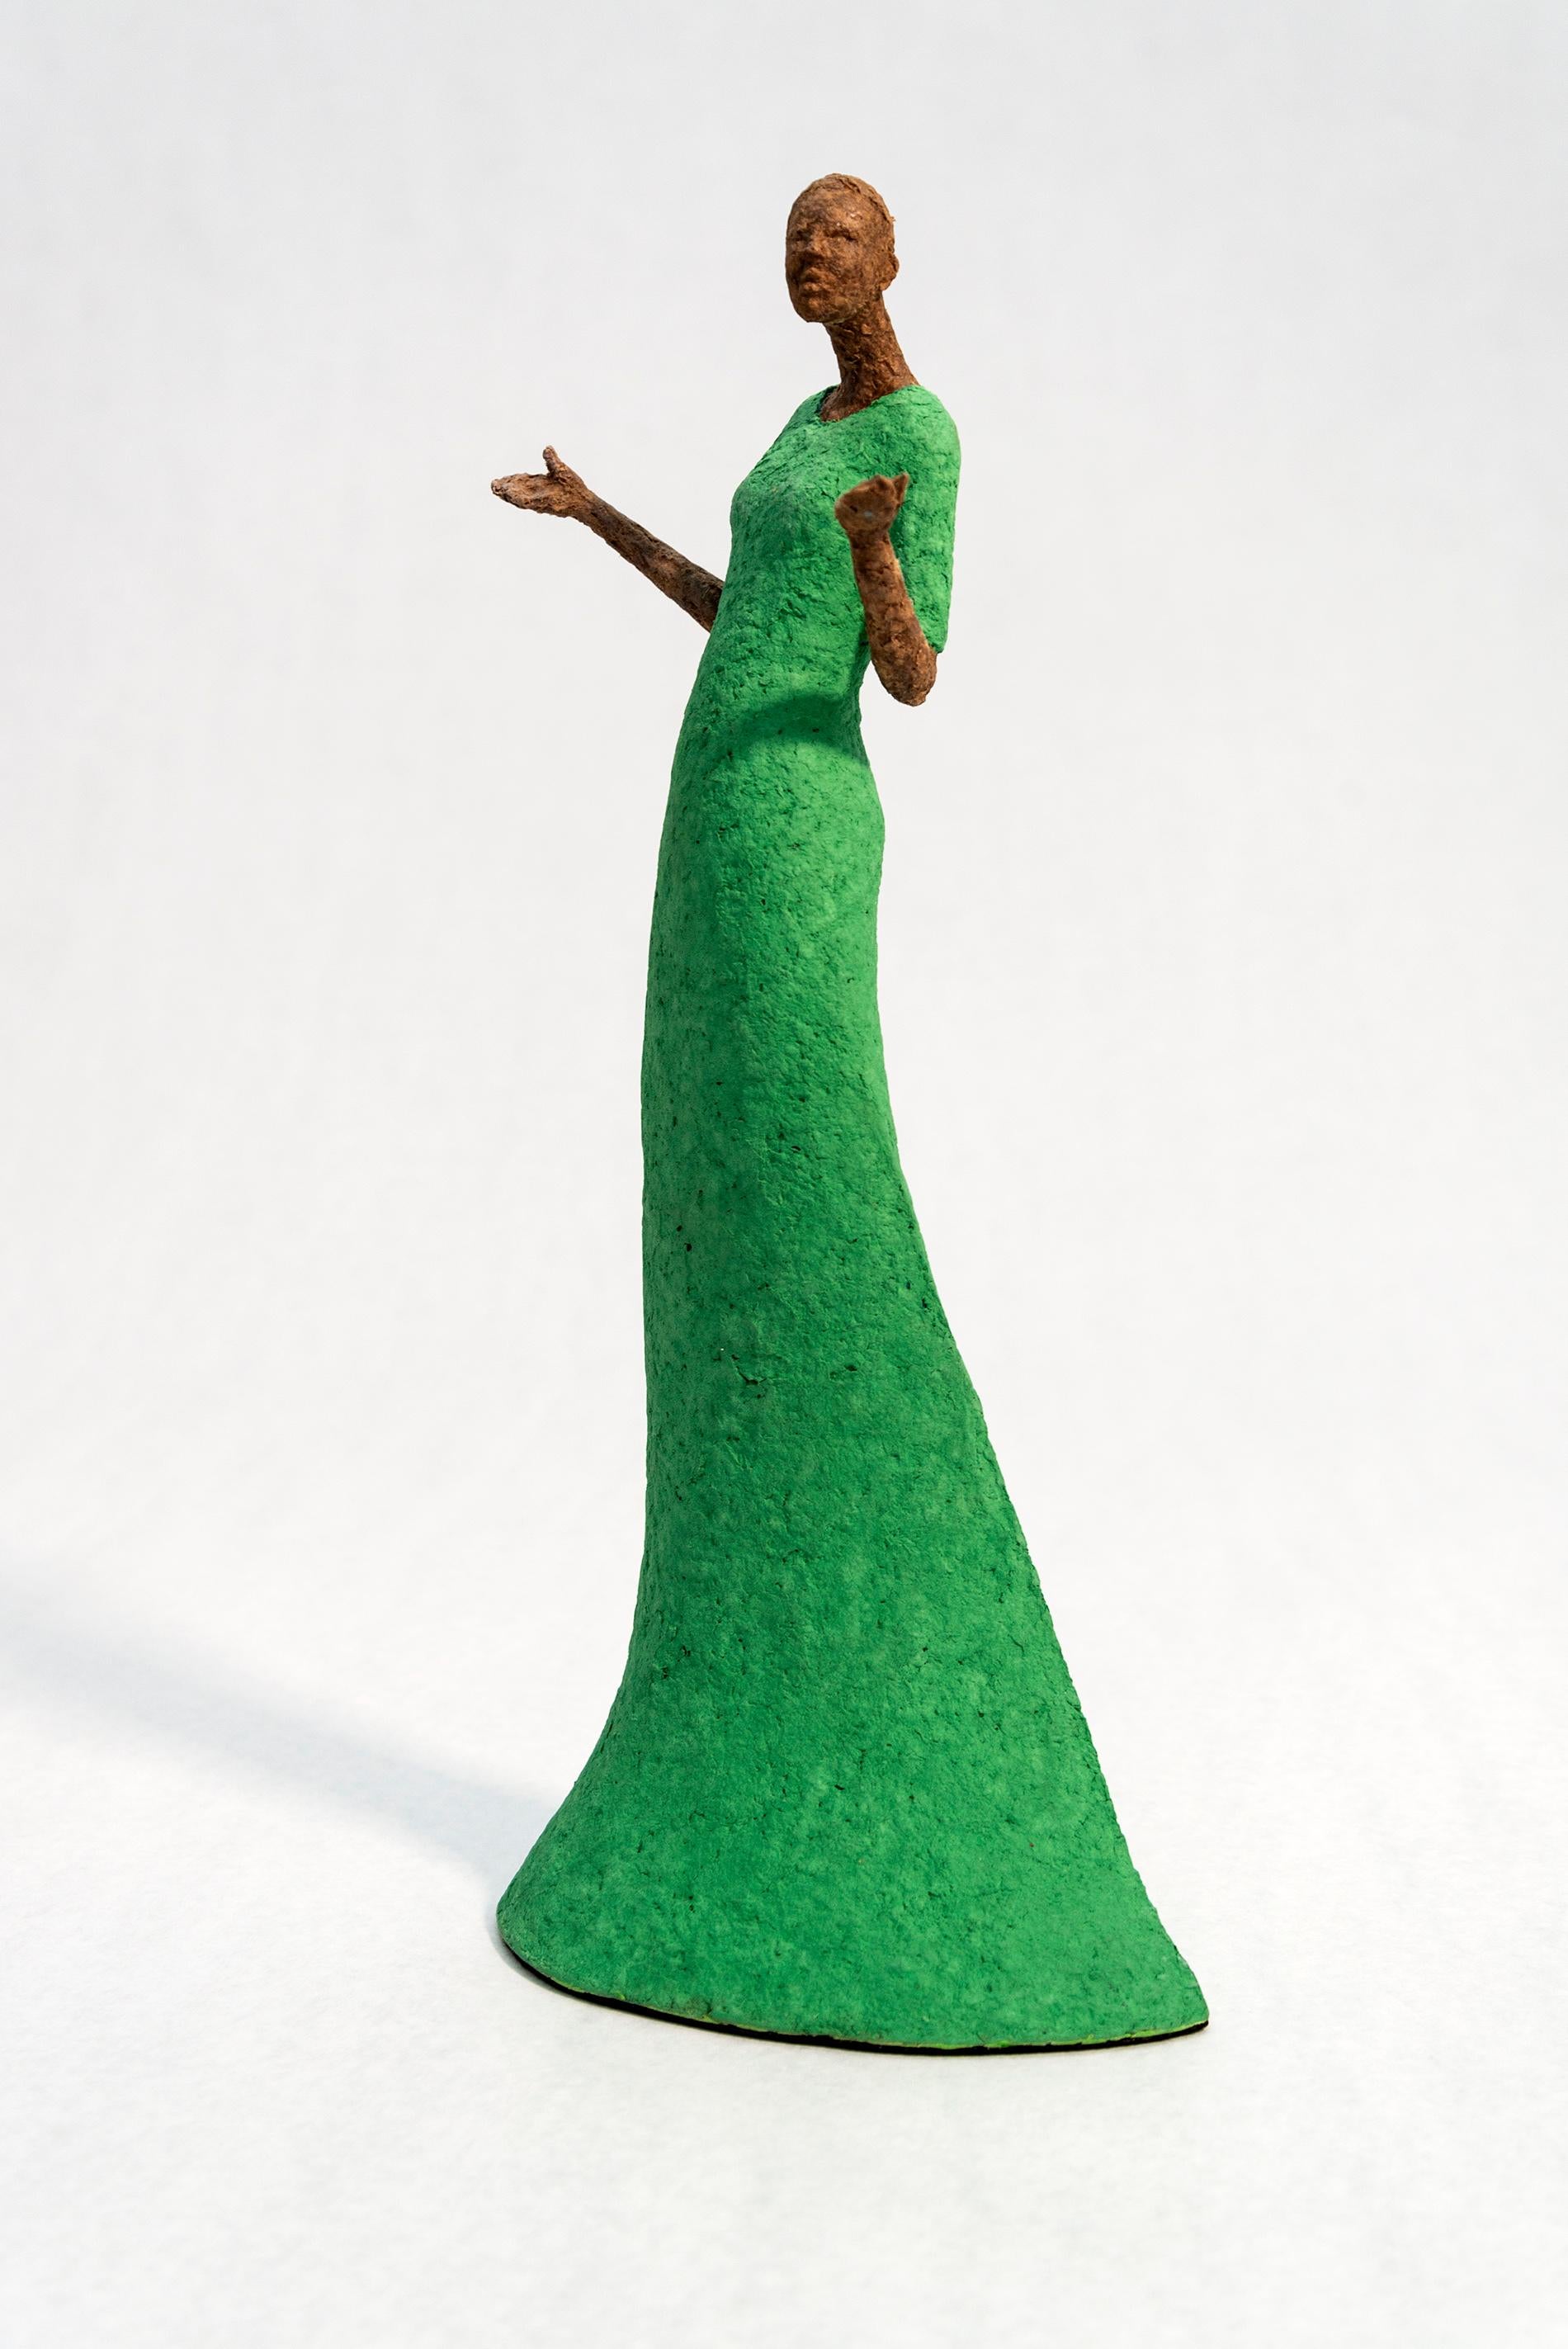 Bella - leuchtend, ausdrucksstark, strukturiert, weiblich, figurativ, Papiermaché-Skulptur – Sculpture von Paul Duval